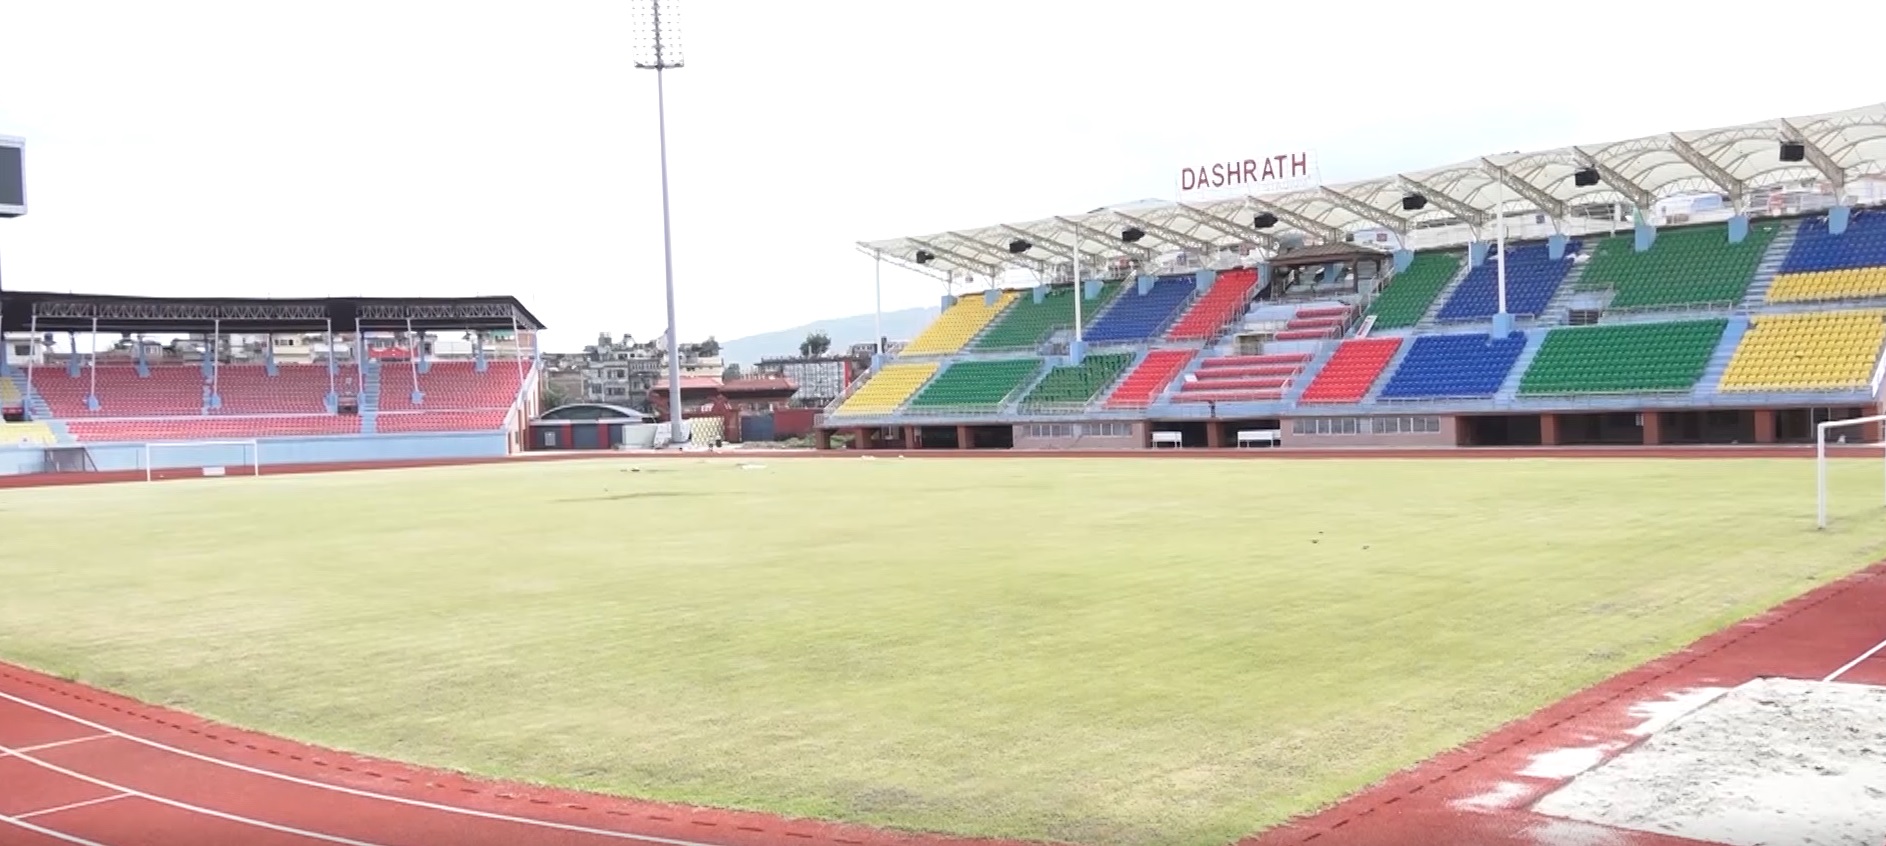 एनएसएल फुटबलमा आज दोस्रो चरणको खेलमा काठमाडौं रेजर्स र एफसी चितवन भिड्दै